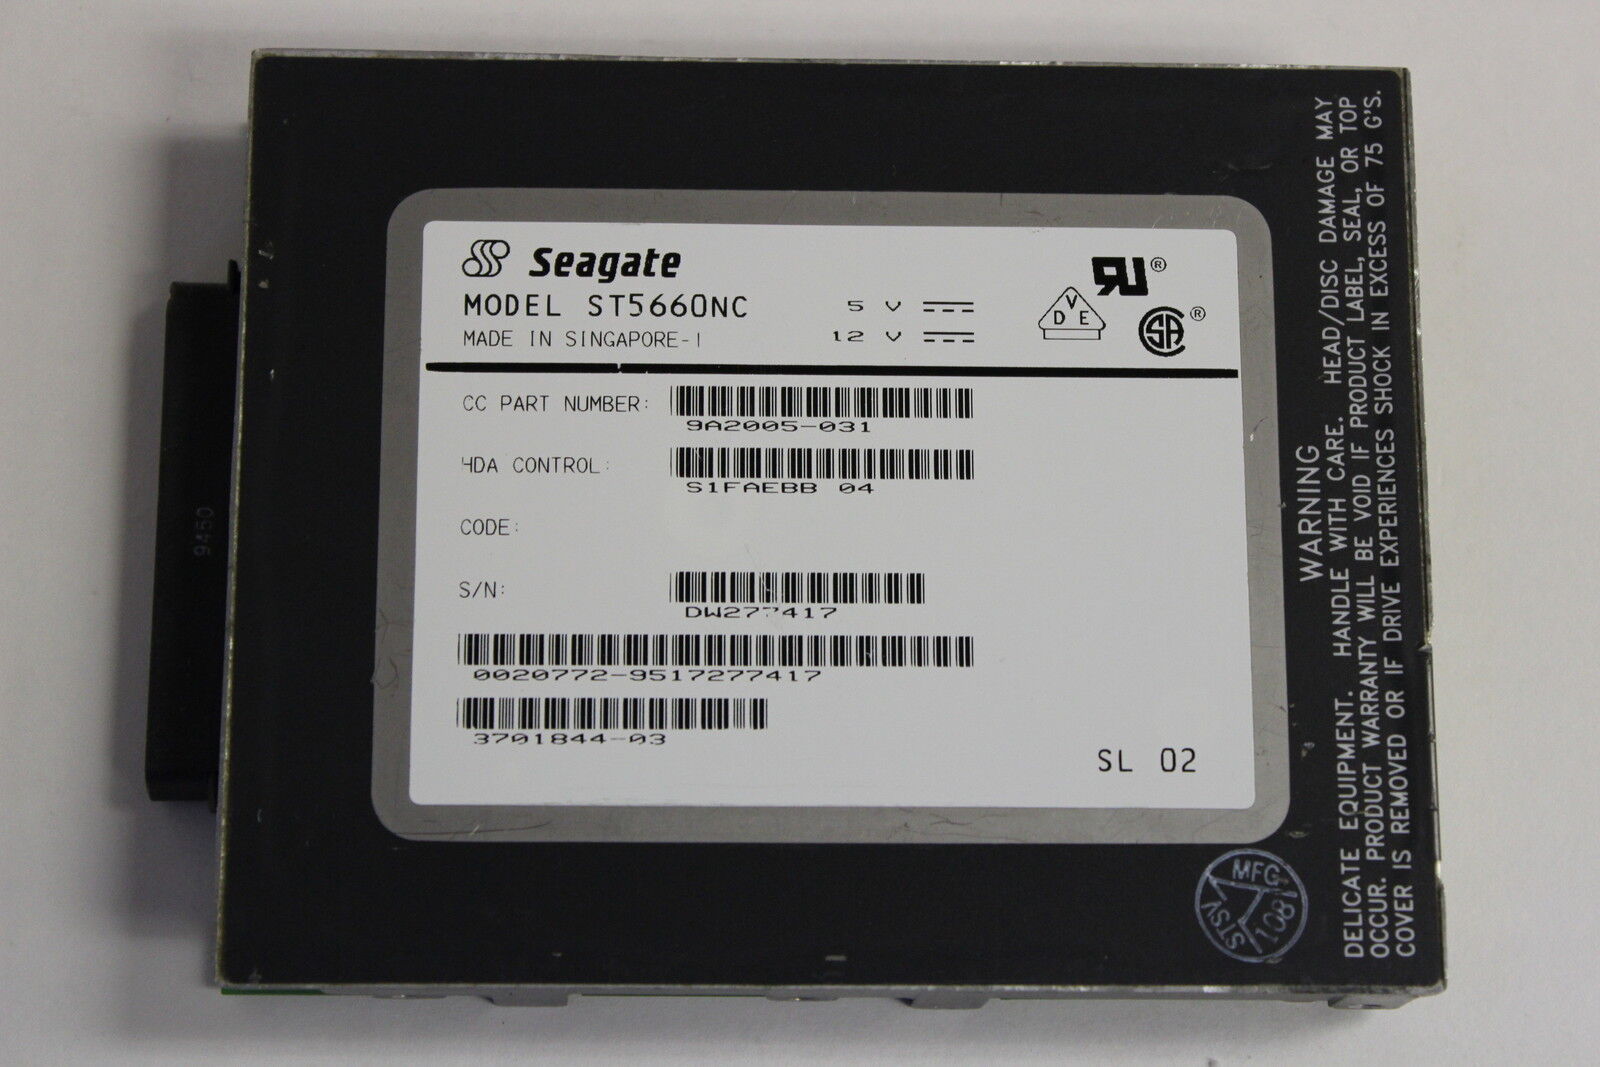 SEAGATE ST5660NC 3.5 528MB 80 PIN SCSI HARD DRIVE  SUN 3701844-03 370-1844-03